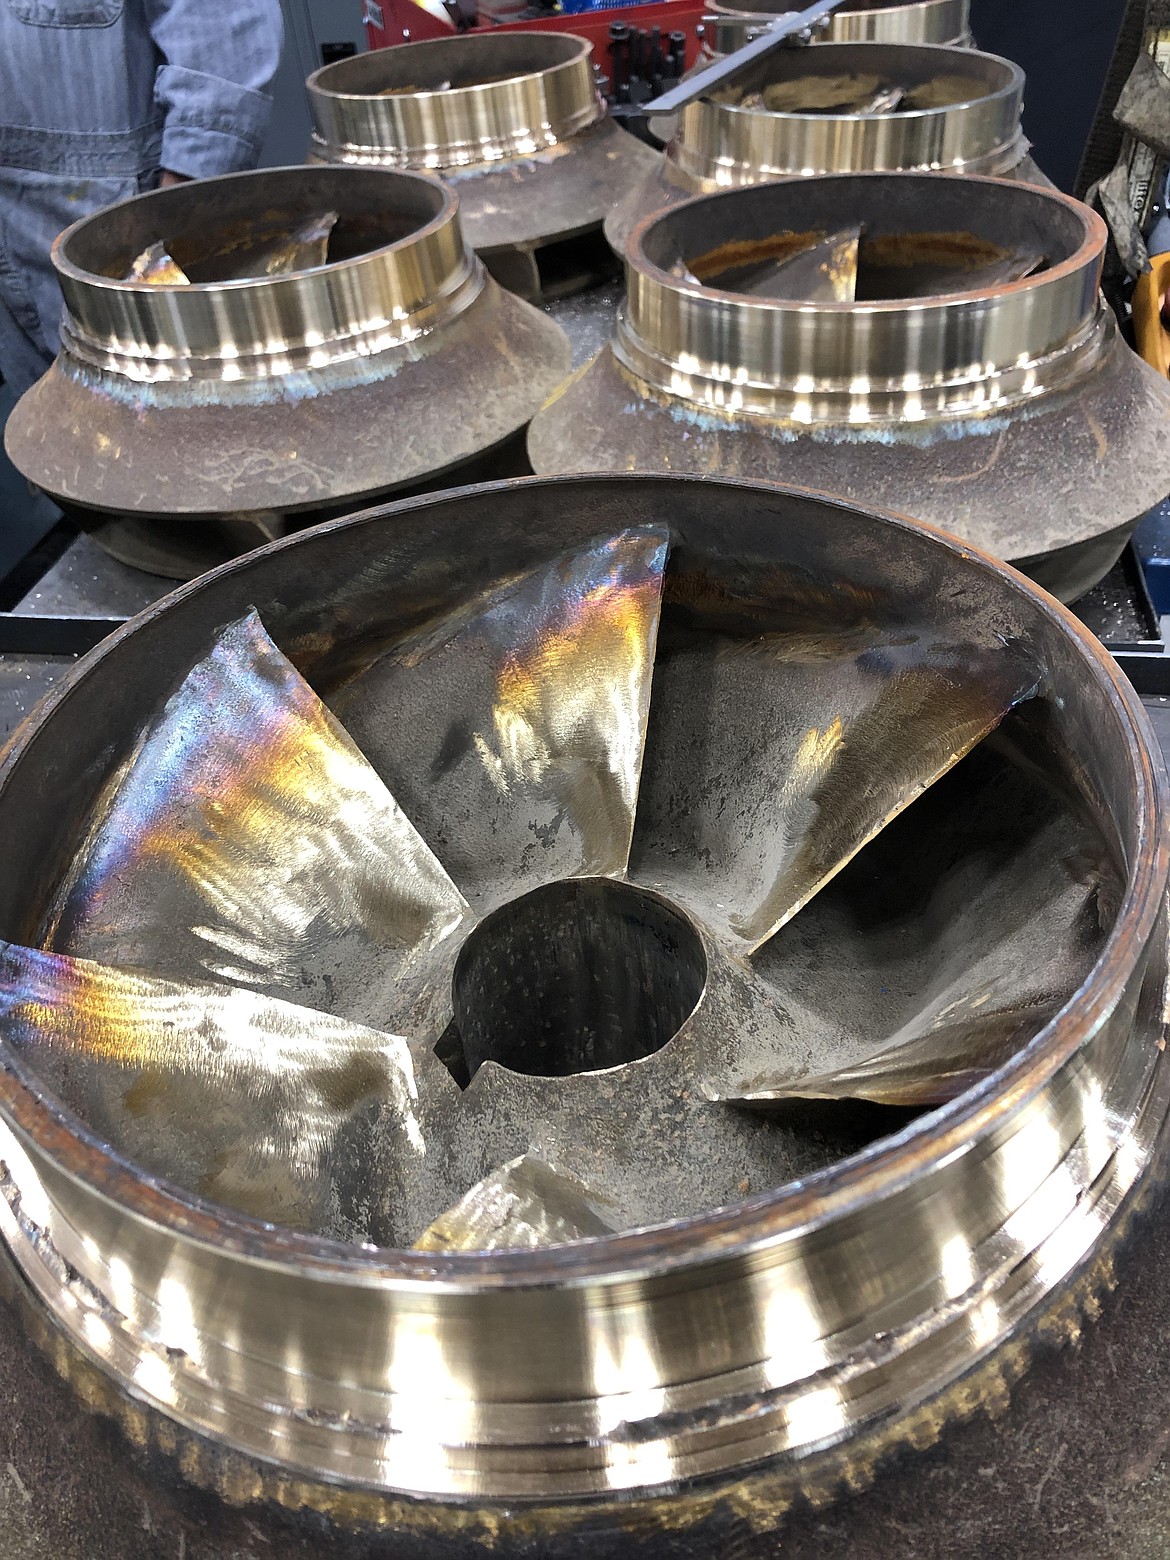 Refurbished bronze impeller blades for large pumps used in irrigation.